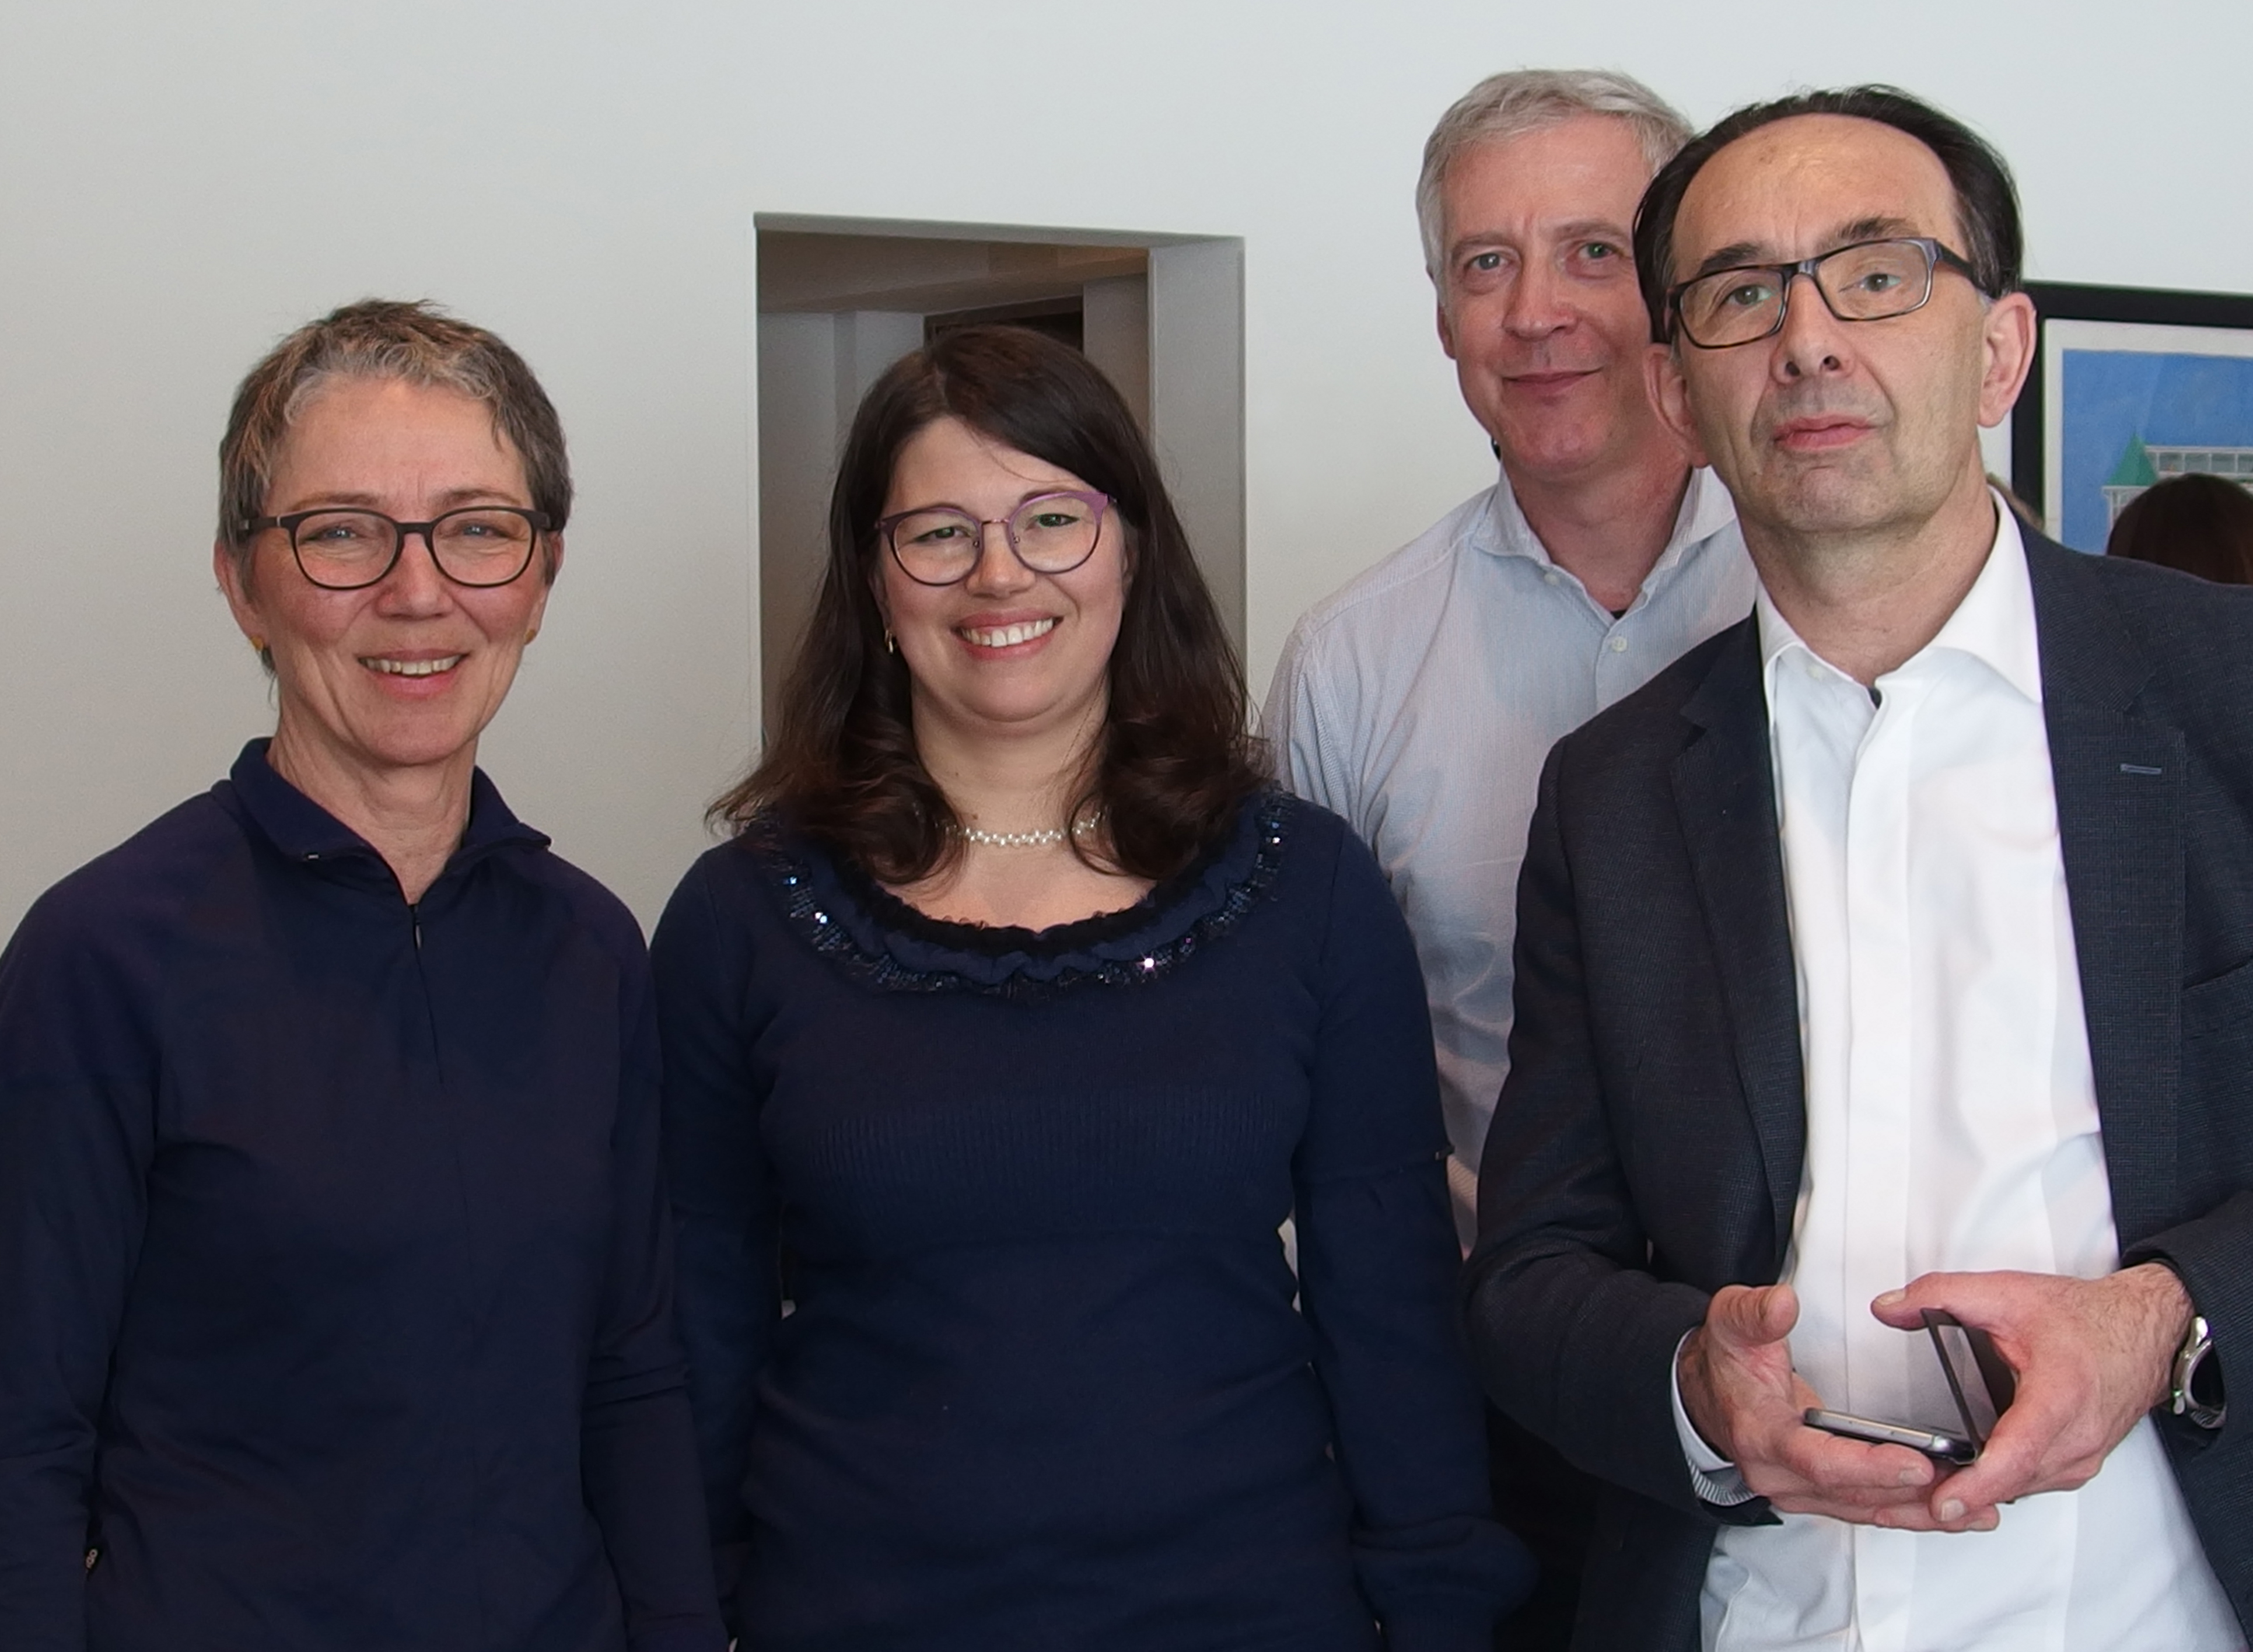 на фото слева направо: Моника Линек, Анна Герке, Терри Оливри, Клод Фавро. Давос, Швейцария, март 2018 г.